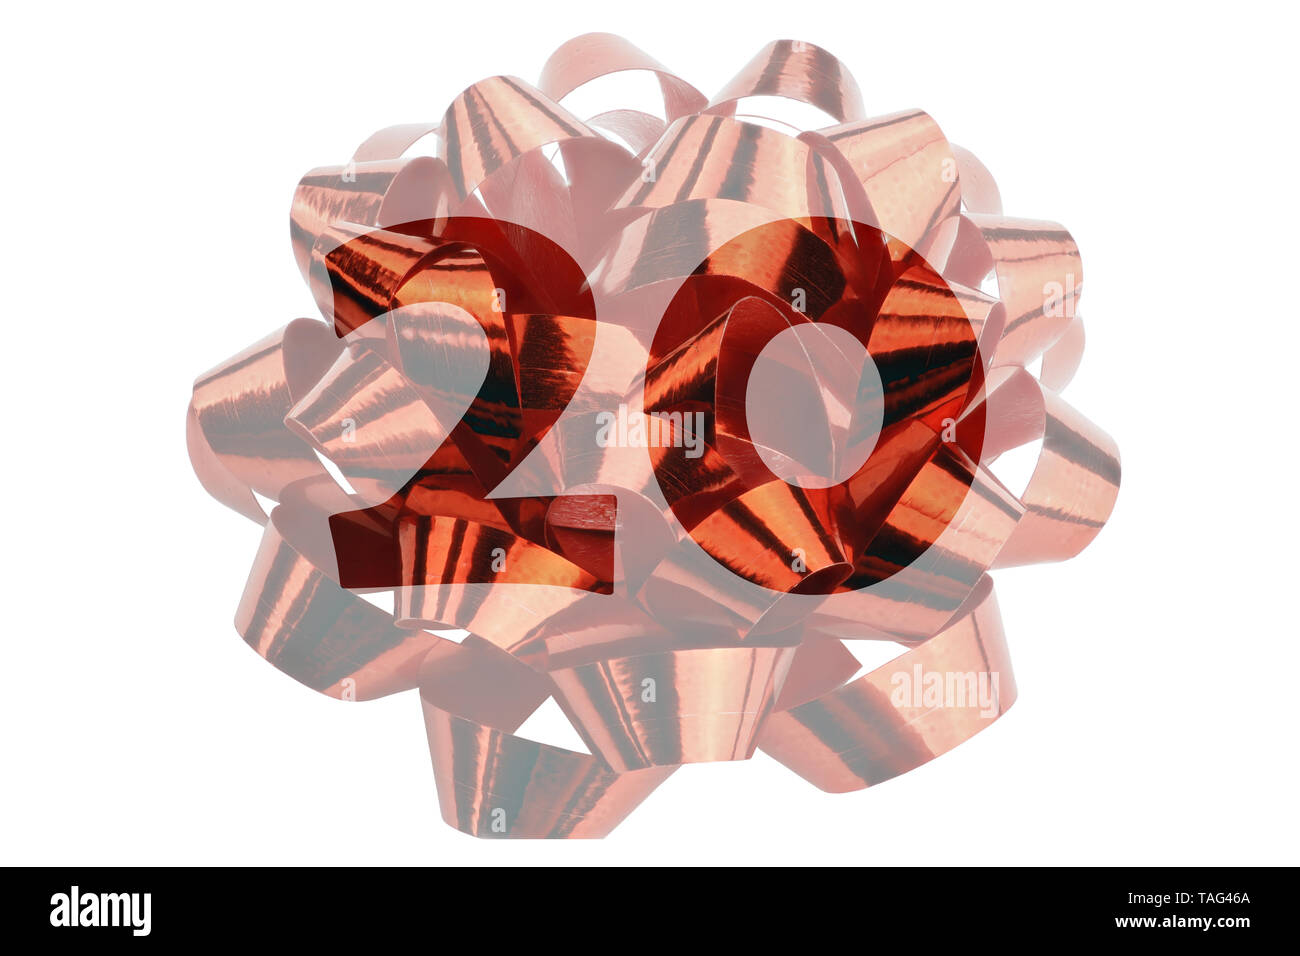 Imagen de un lazo de regalo iluminada hecha de cinta de regalo roja transparente con el número 20 en color original. Foto de stock